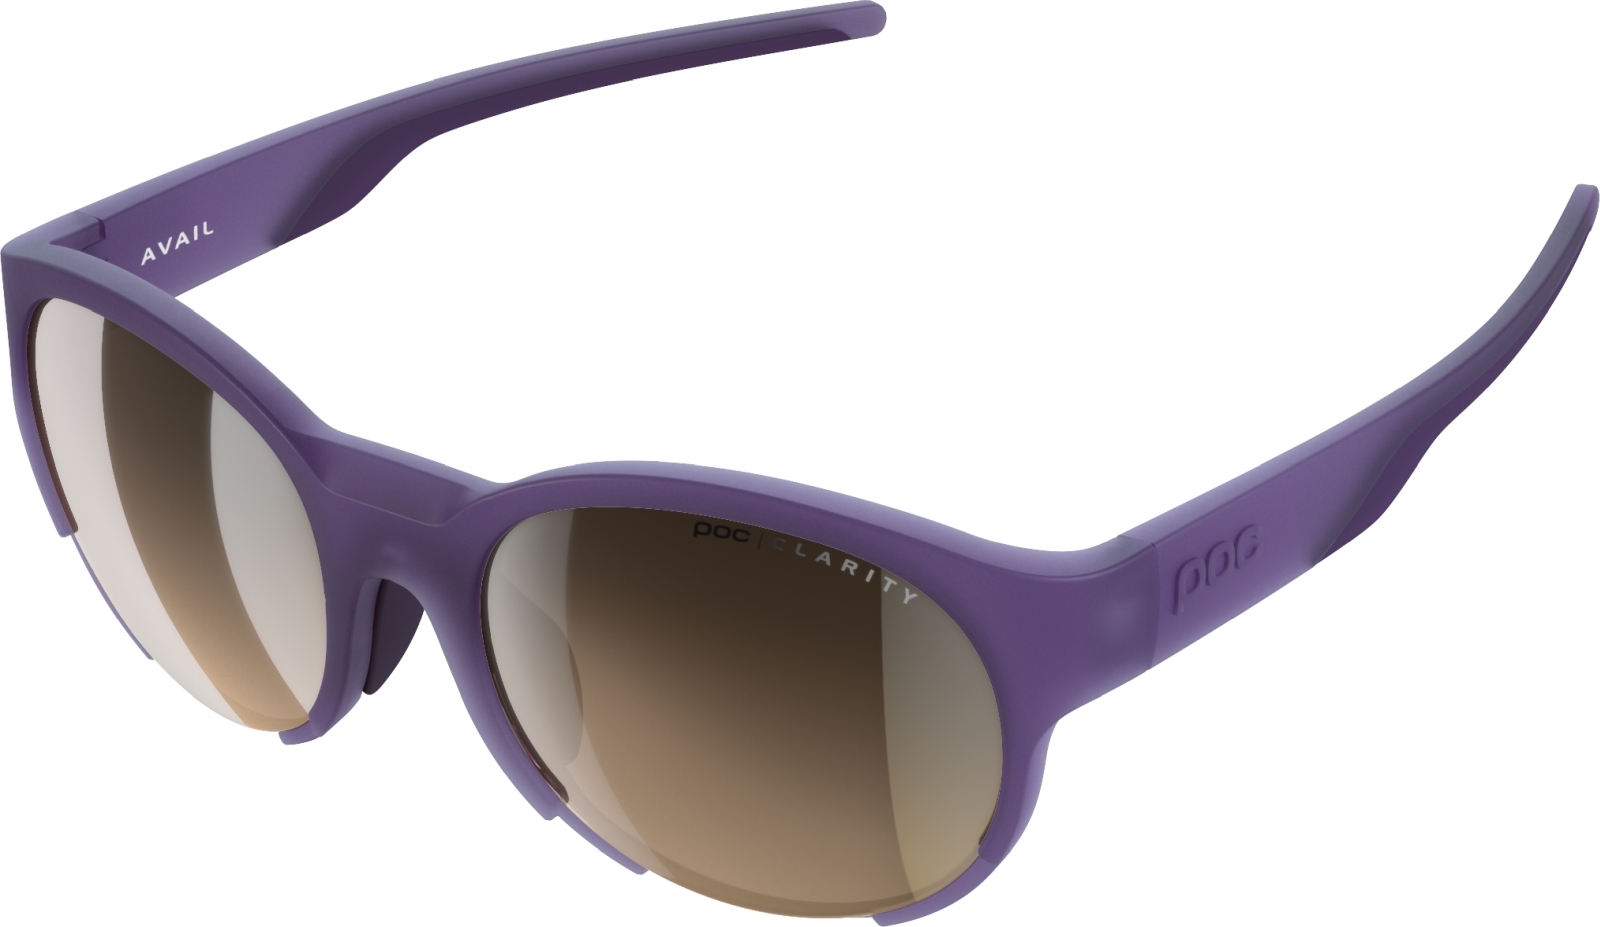 E-shop POC Avail - Sapphire Purple Translucent uni